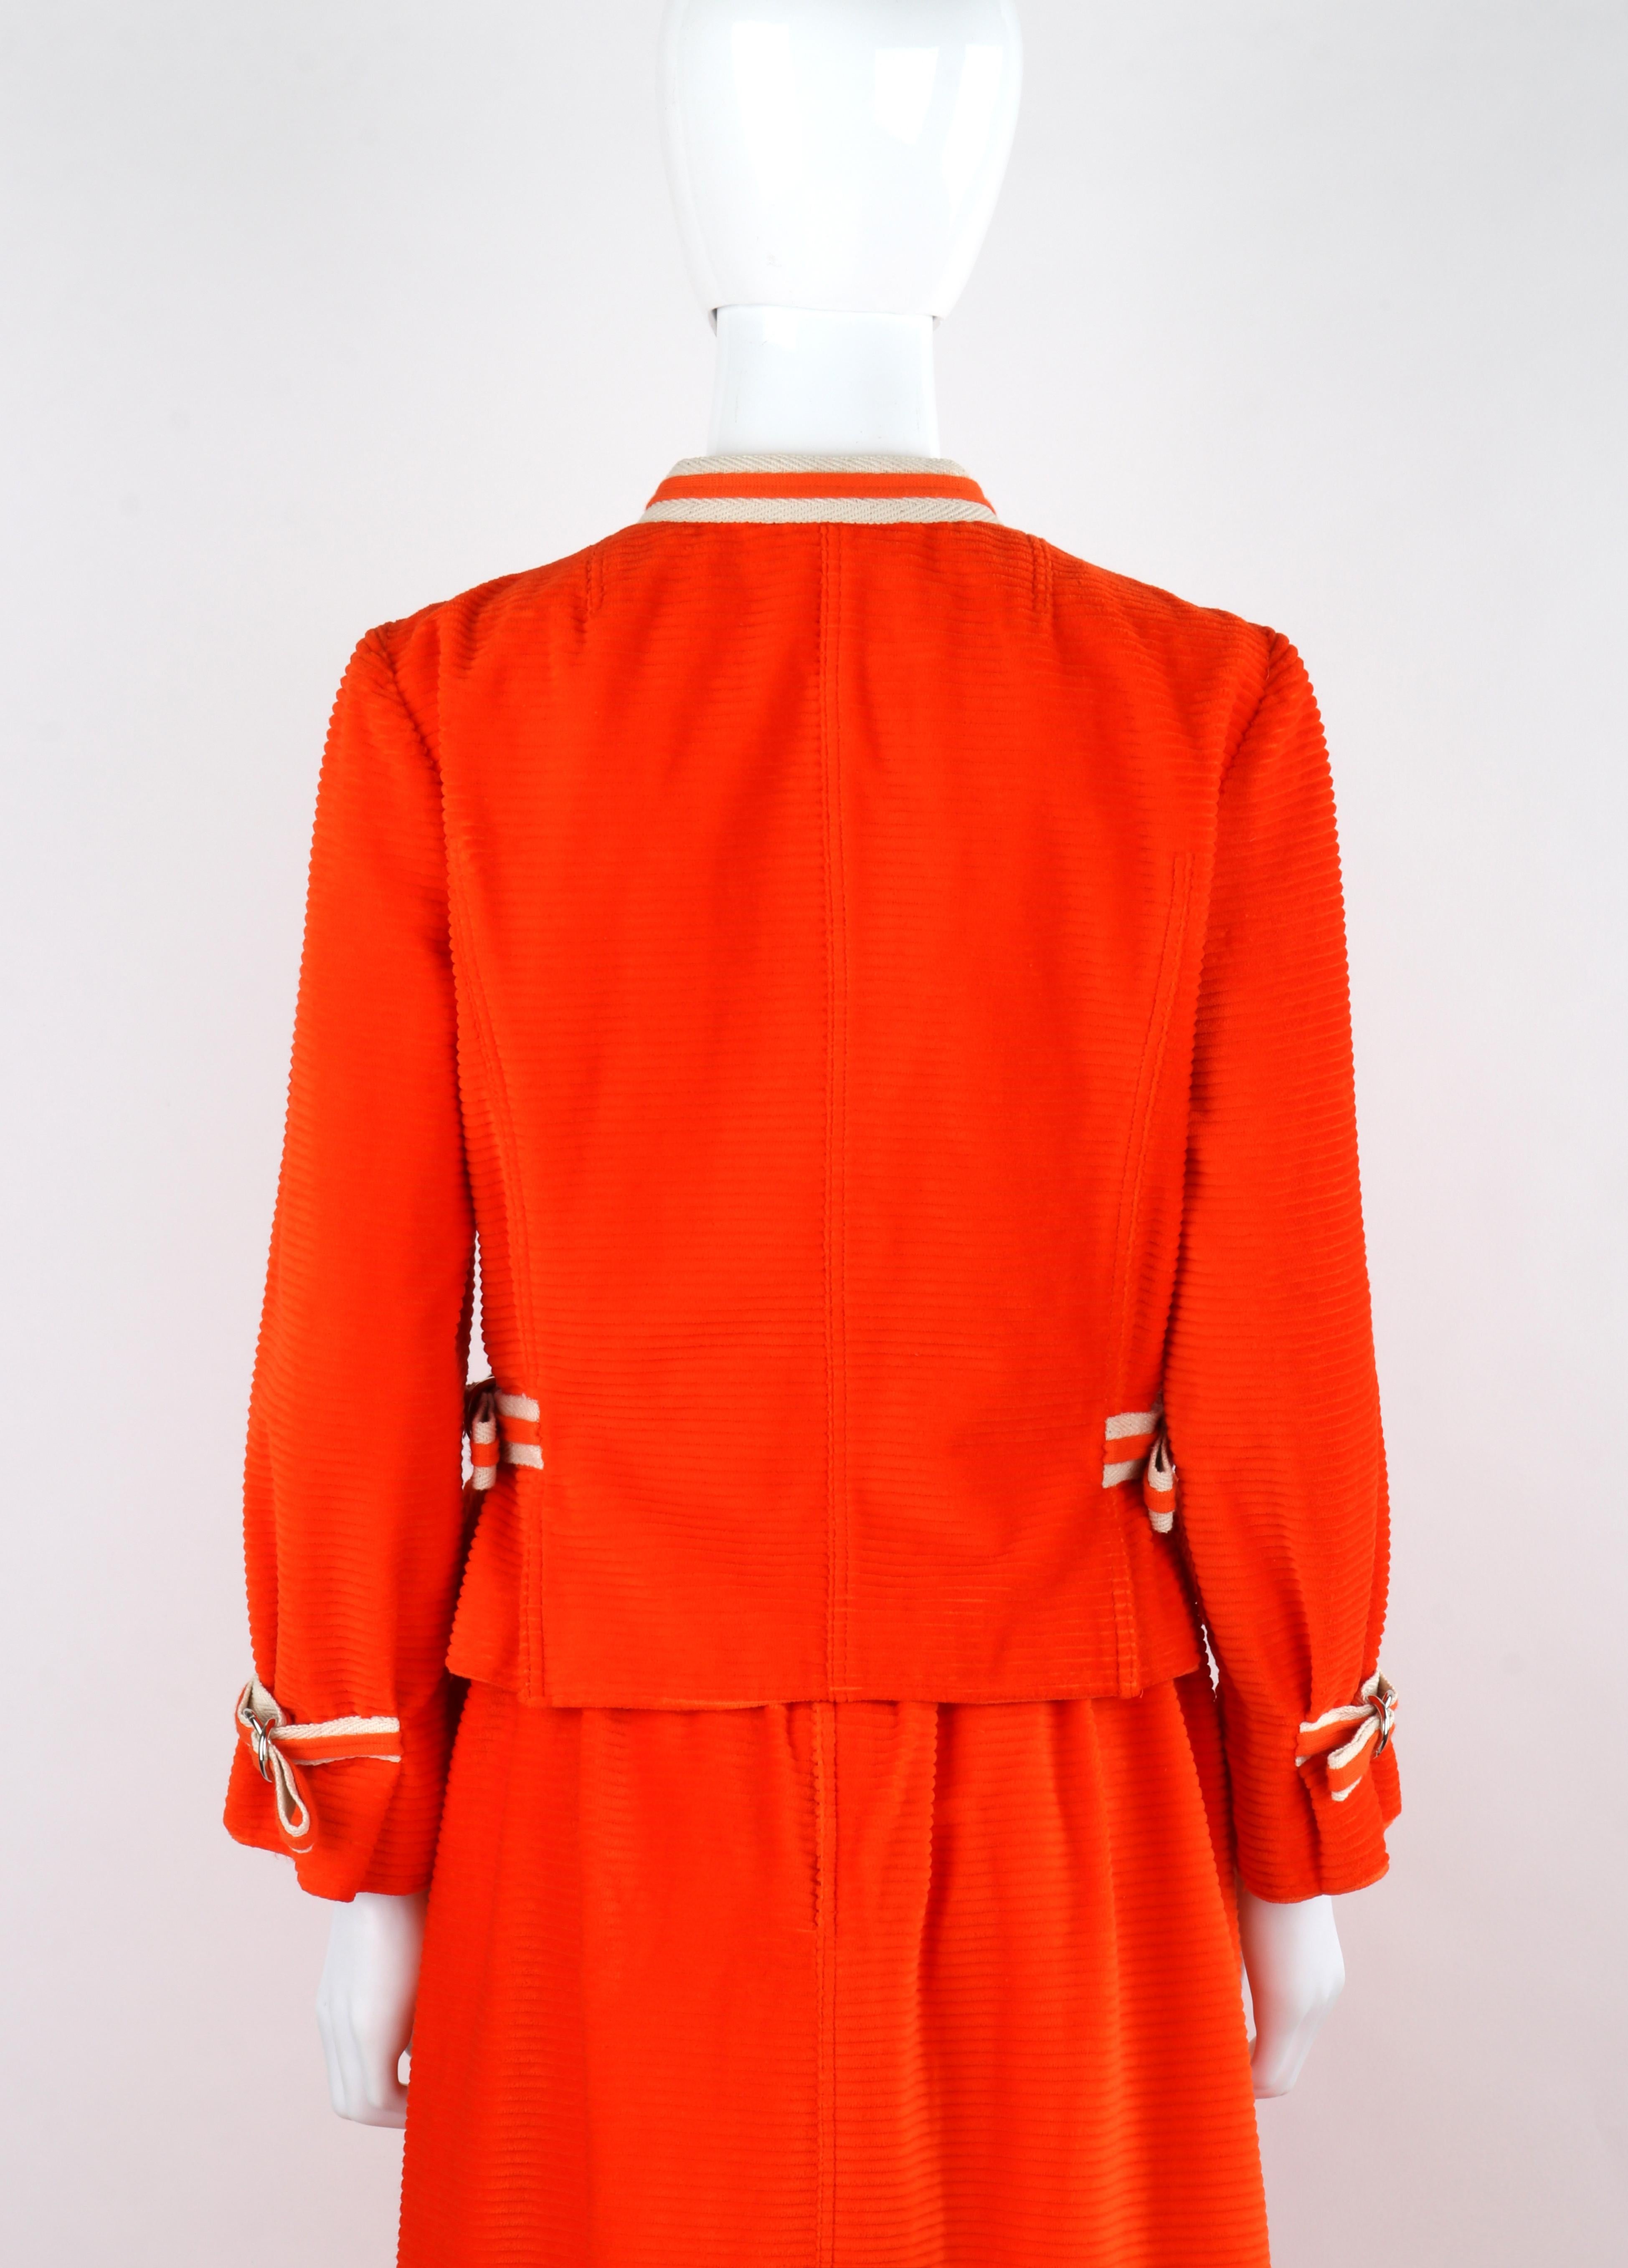 COURREGES c.1970's Orange Corduroy Button Up Jacket Blazer Skirt Suit Set w/Tags For Sale 1